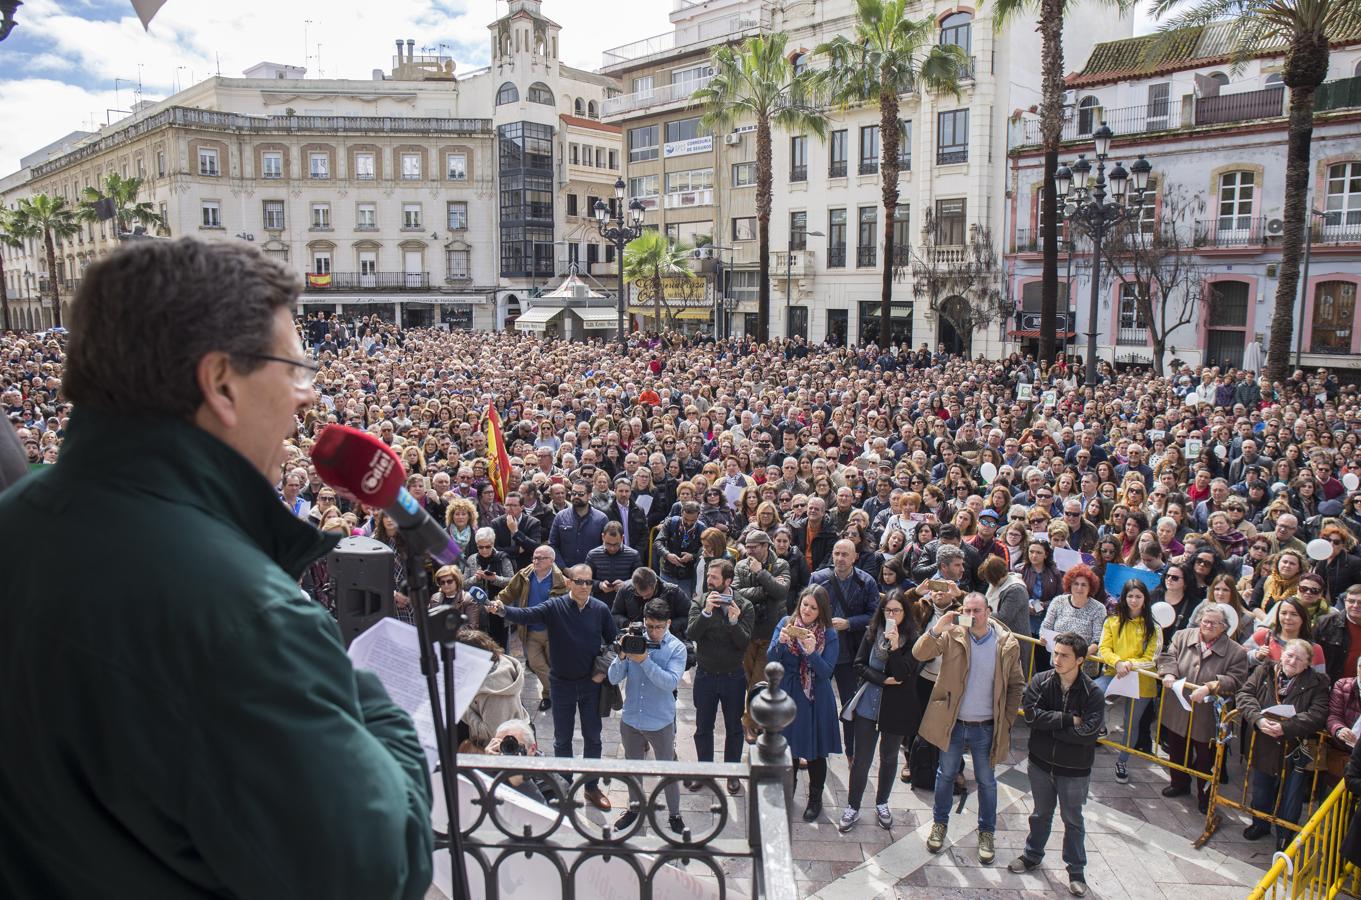 Huelva, foco de la concentración. La «Plataforma por la No Derogación de la Prisión Permanente Revisable» ha convocado manifestaciones por todo el país, siendo Huelva el punto central de las concentraciones. En concreto, unas 6.000 personas han salido a la calle en la capital onubense.